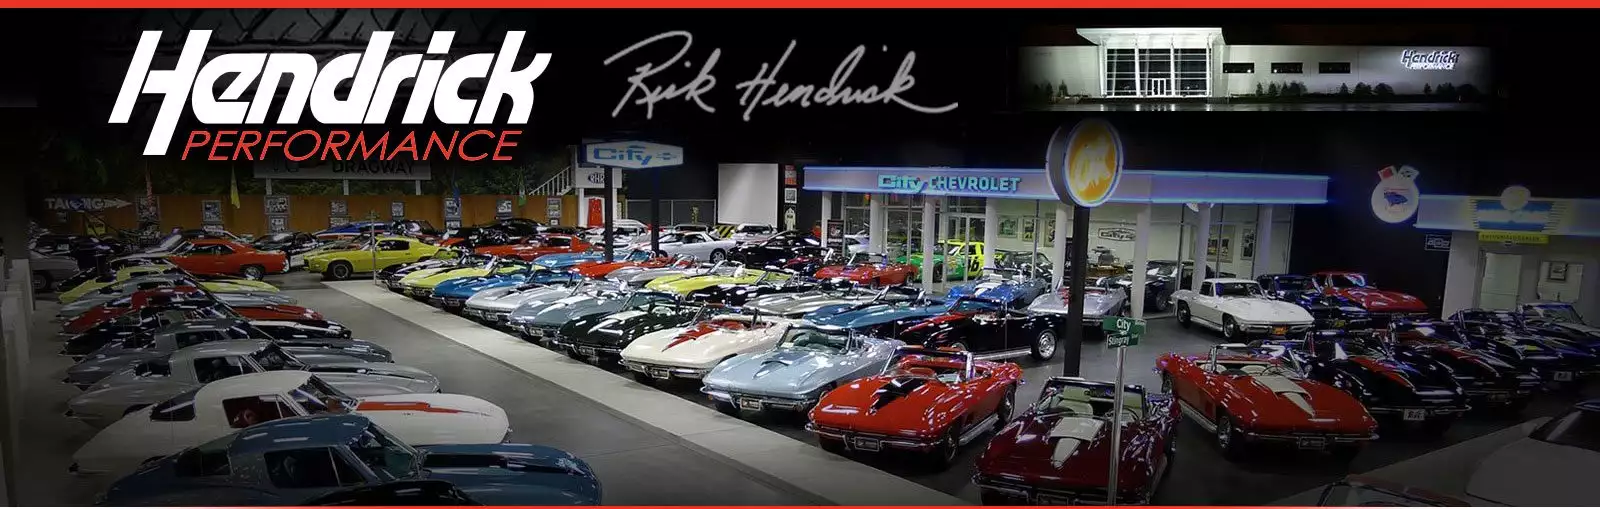 Коллекция автомобилей Hendrick Performance